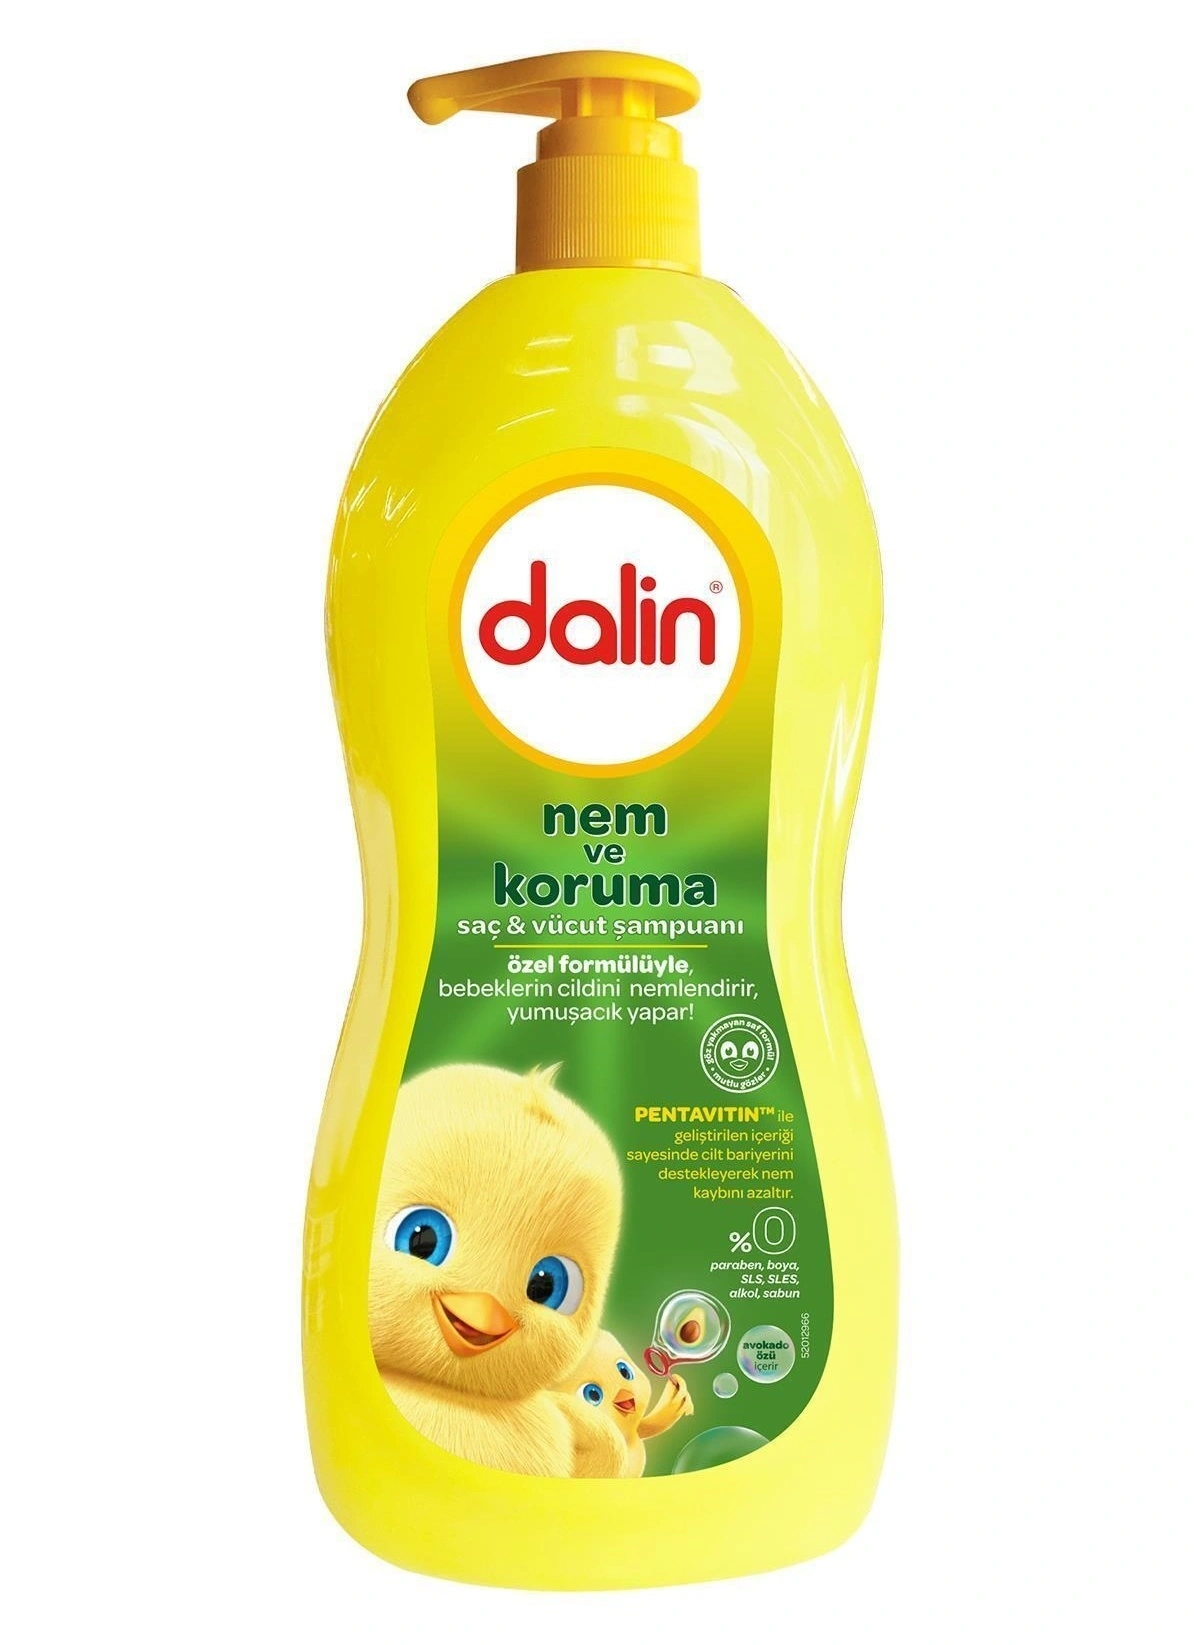 Dalin - Dalin Nem ve Koruma Bebek Şampuanı 700 ml